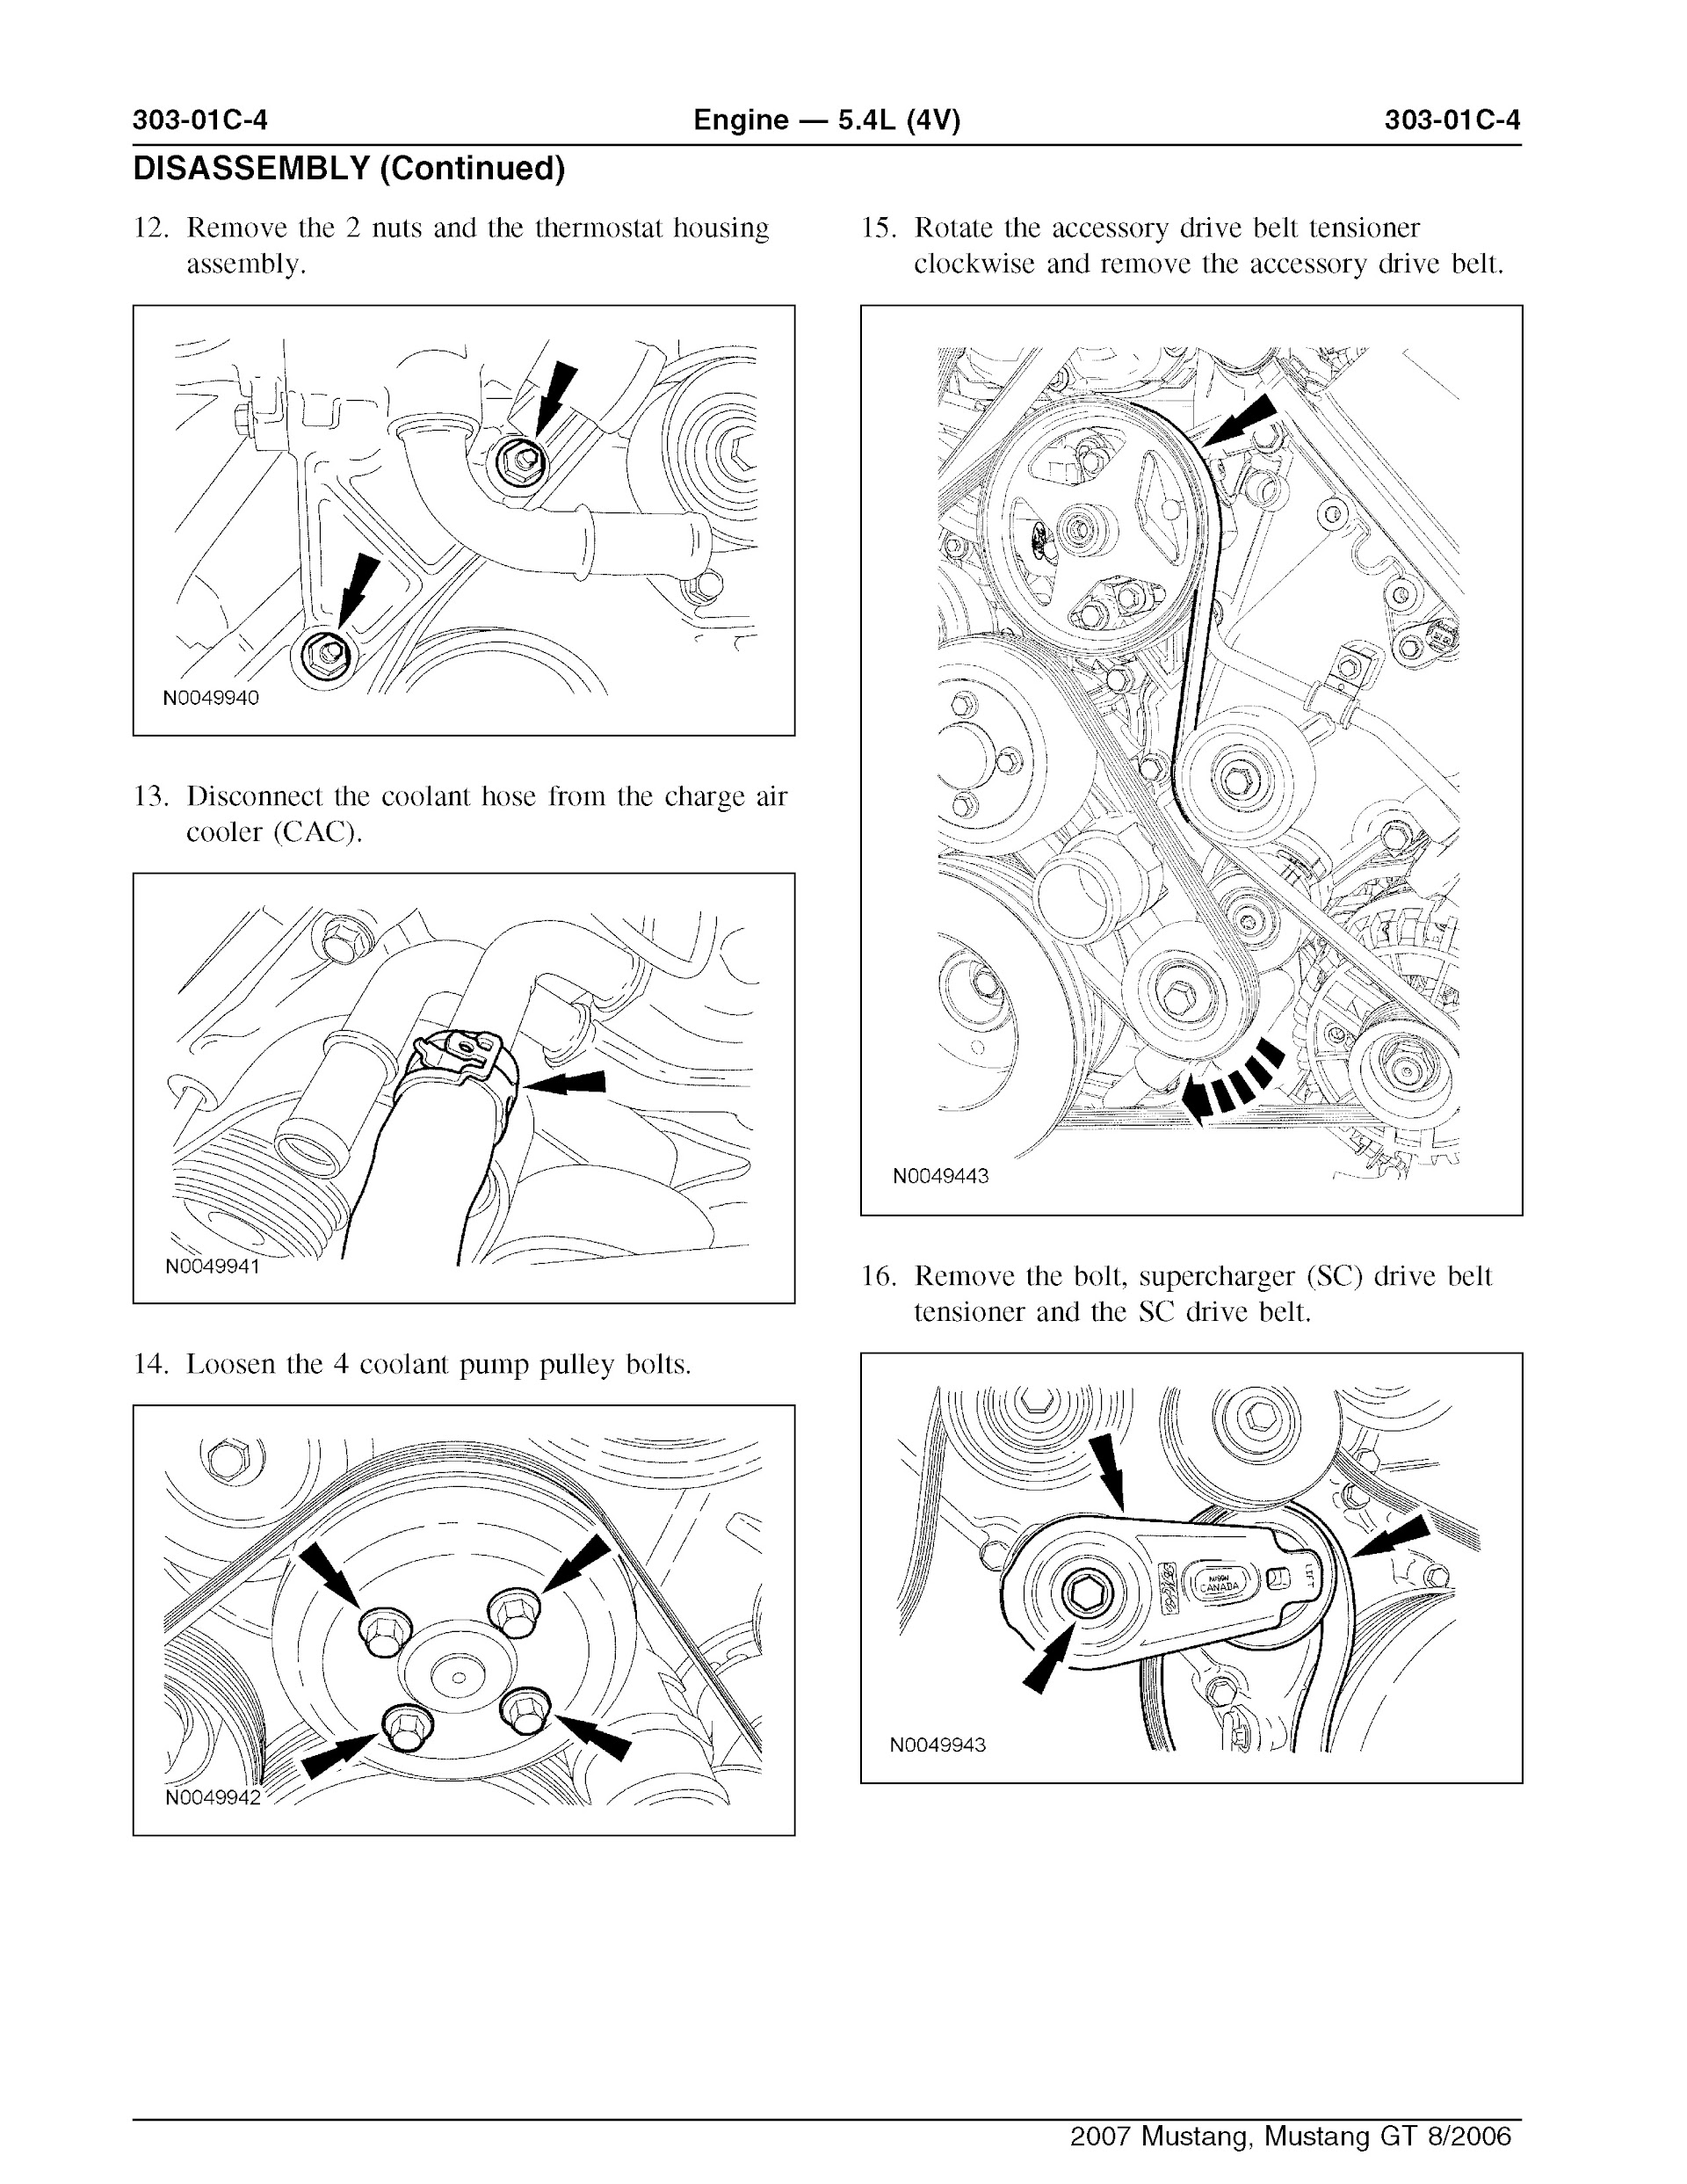 2007 Ford Mustang Repair Manual, Engine 5.4L (4V)